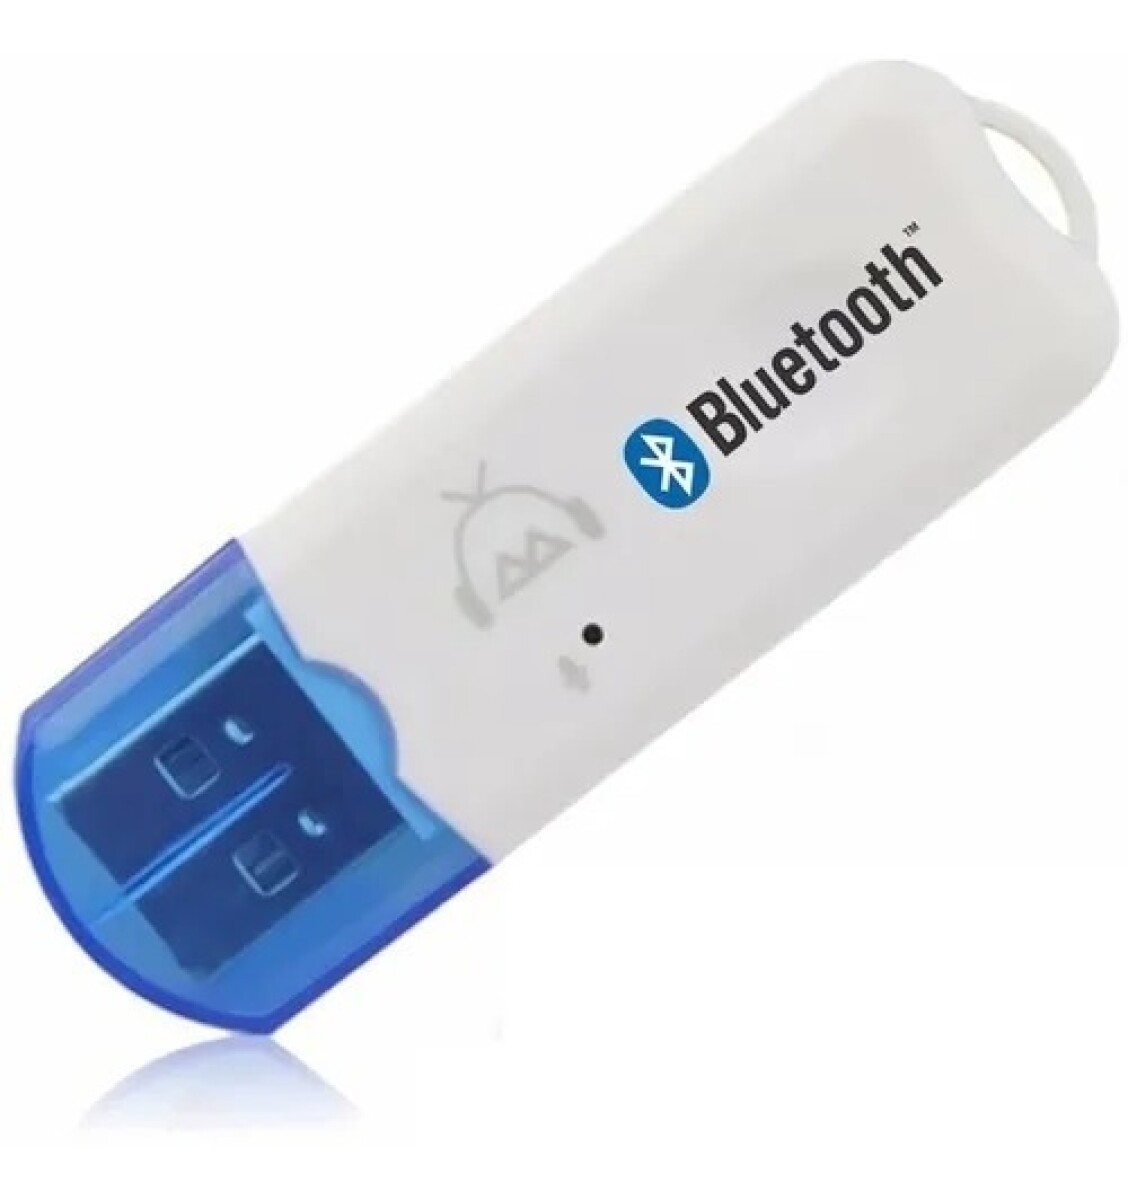 Megastar - Receptor bluetooth USB, convierte cualquiera de